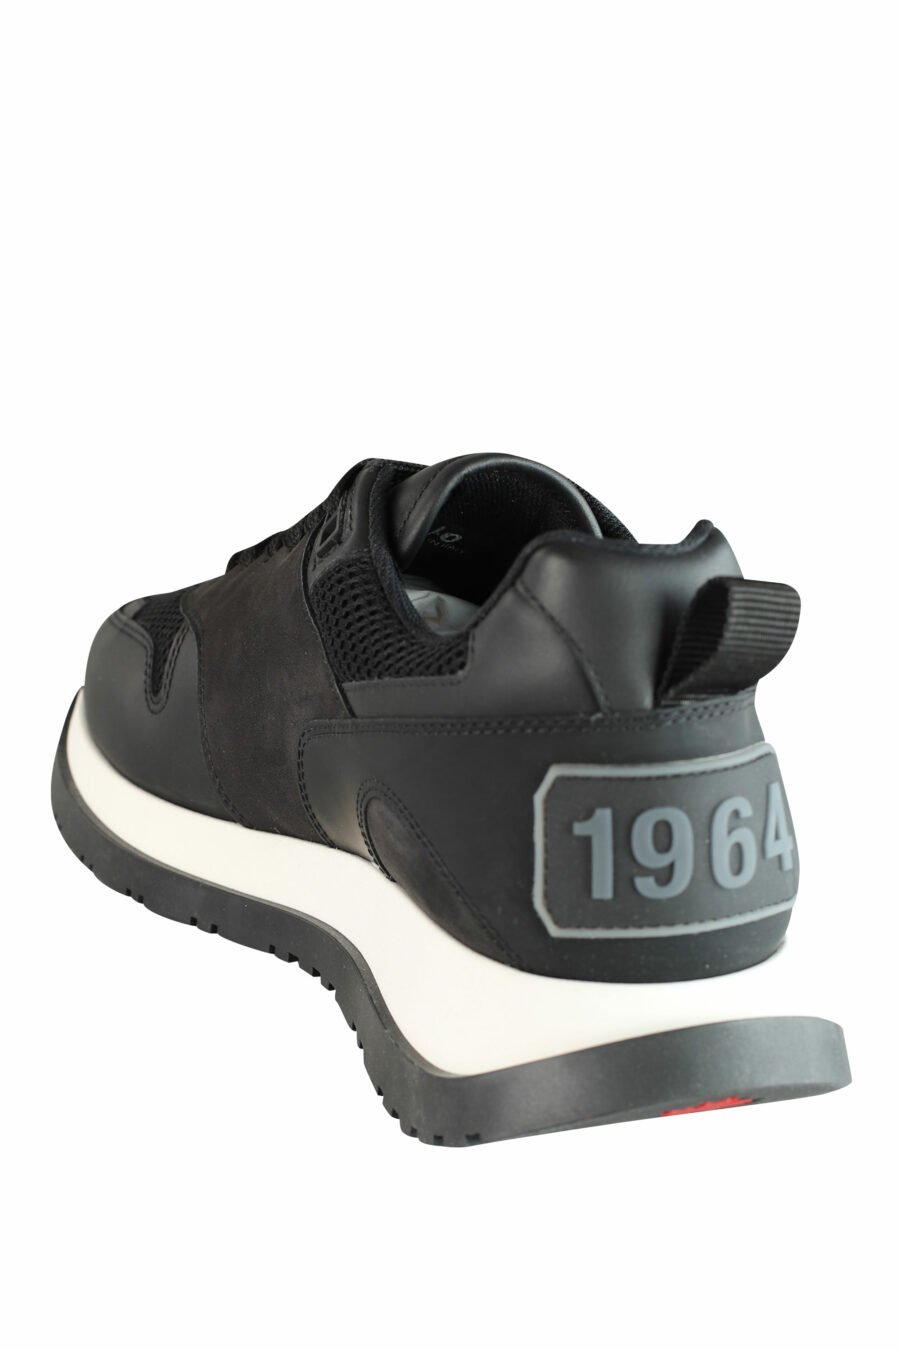 Chaussures de course noires avec semelle blanche et logo noir - IMG 1434